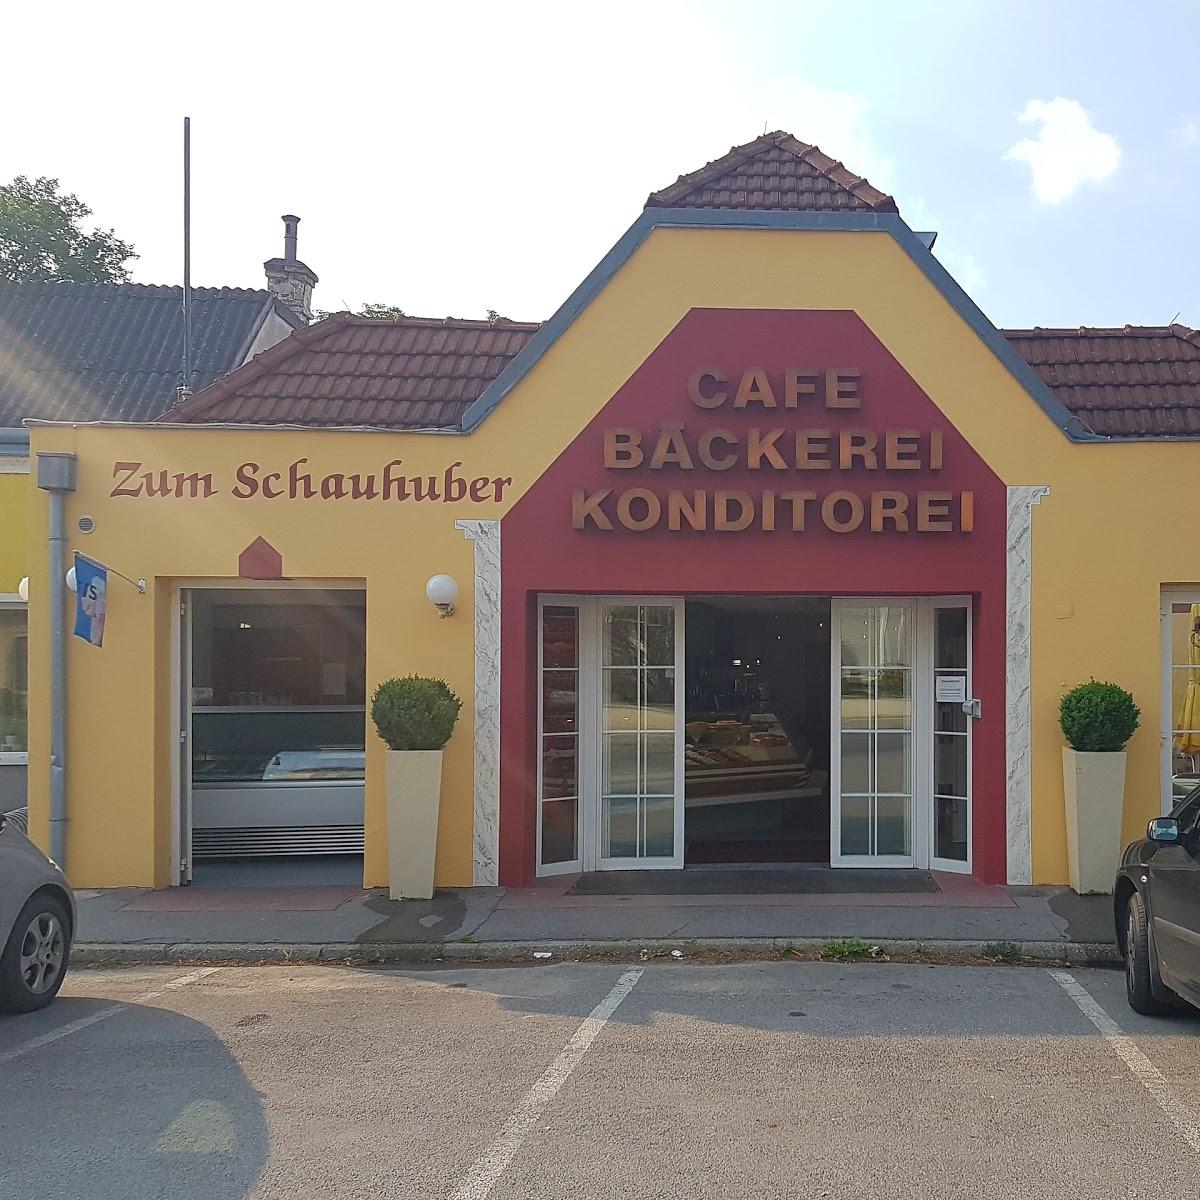 Restaurant "Cafe zum Schauhuber" in Leopoldsdorf im Marchfelde